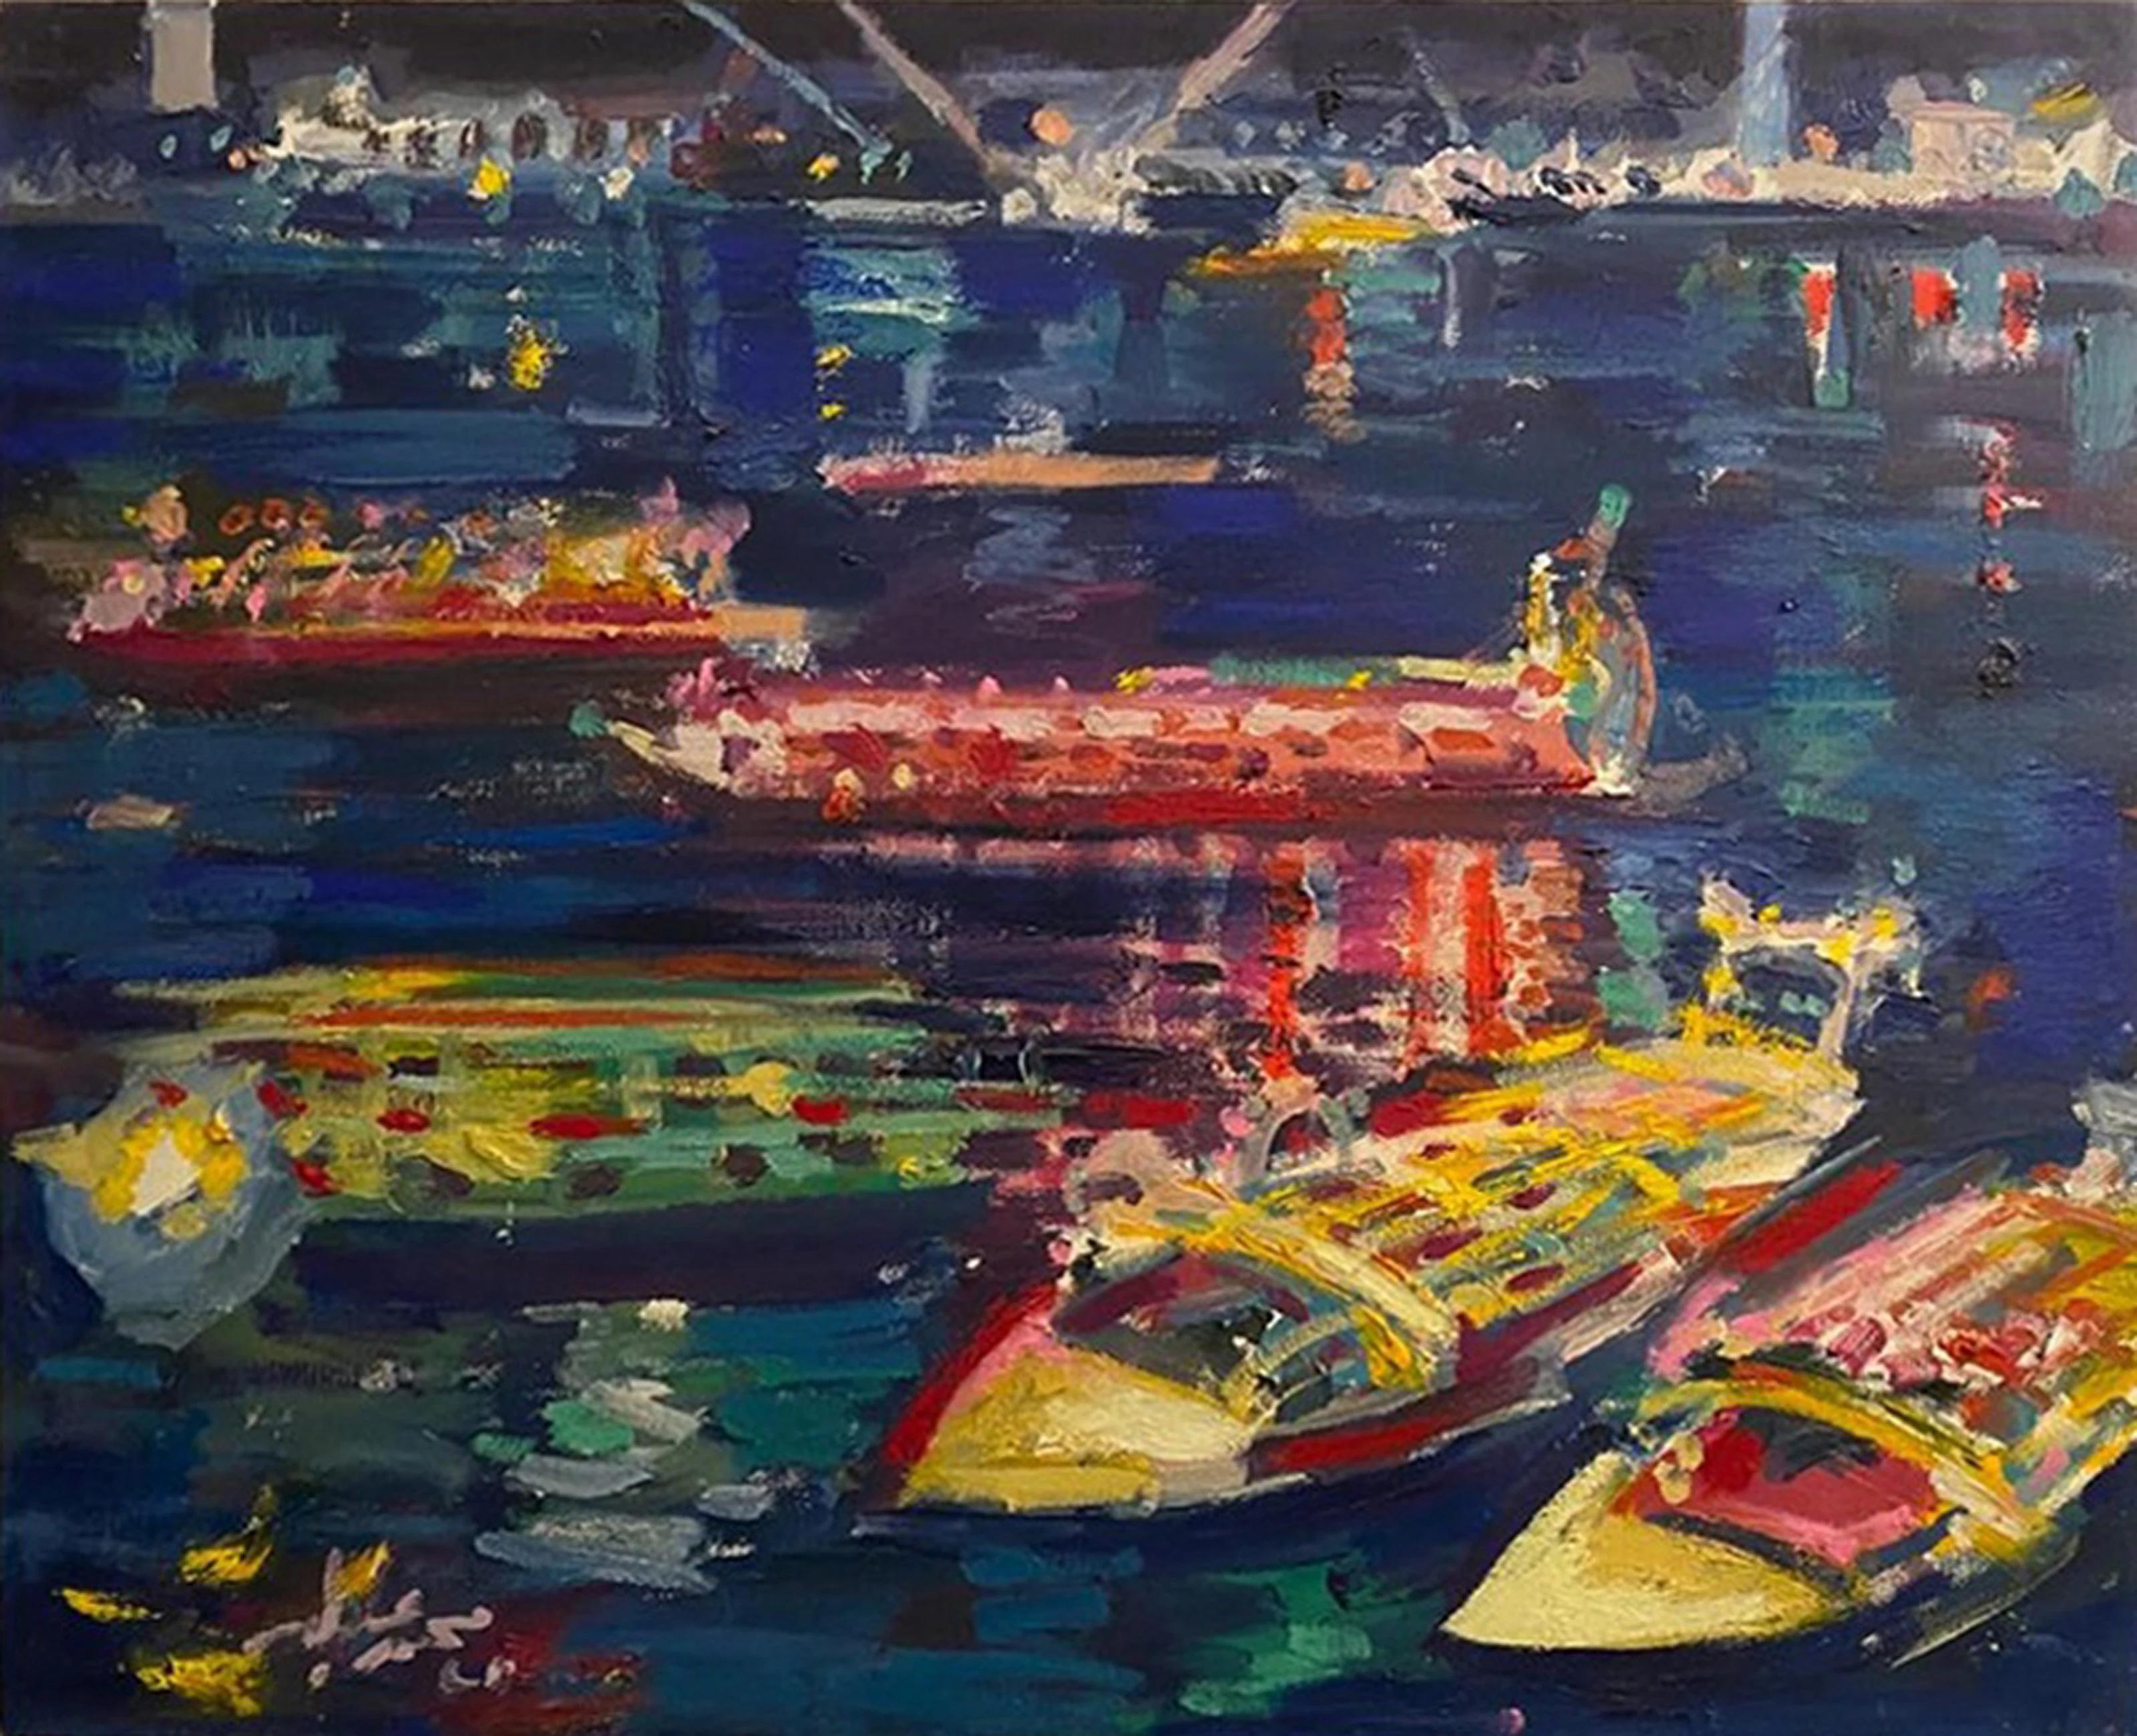 "Nil bei Nacht VII" Gemälde 20" x 24" Zoll von Mohamed Abla

Mohamed Abla wurde 1953 in Mansoura (Nordägypten) geboren. Dort verbrachte er seine Kindheit und beendete die Schule. 1973 zog er nach Alexandria, um ein fünfjähriges Kunststudium an der